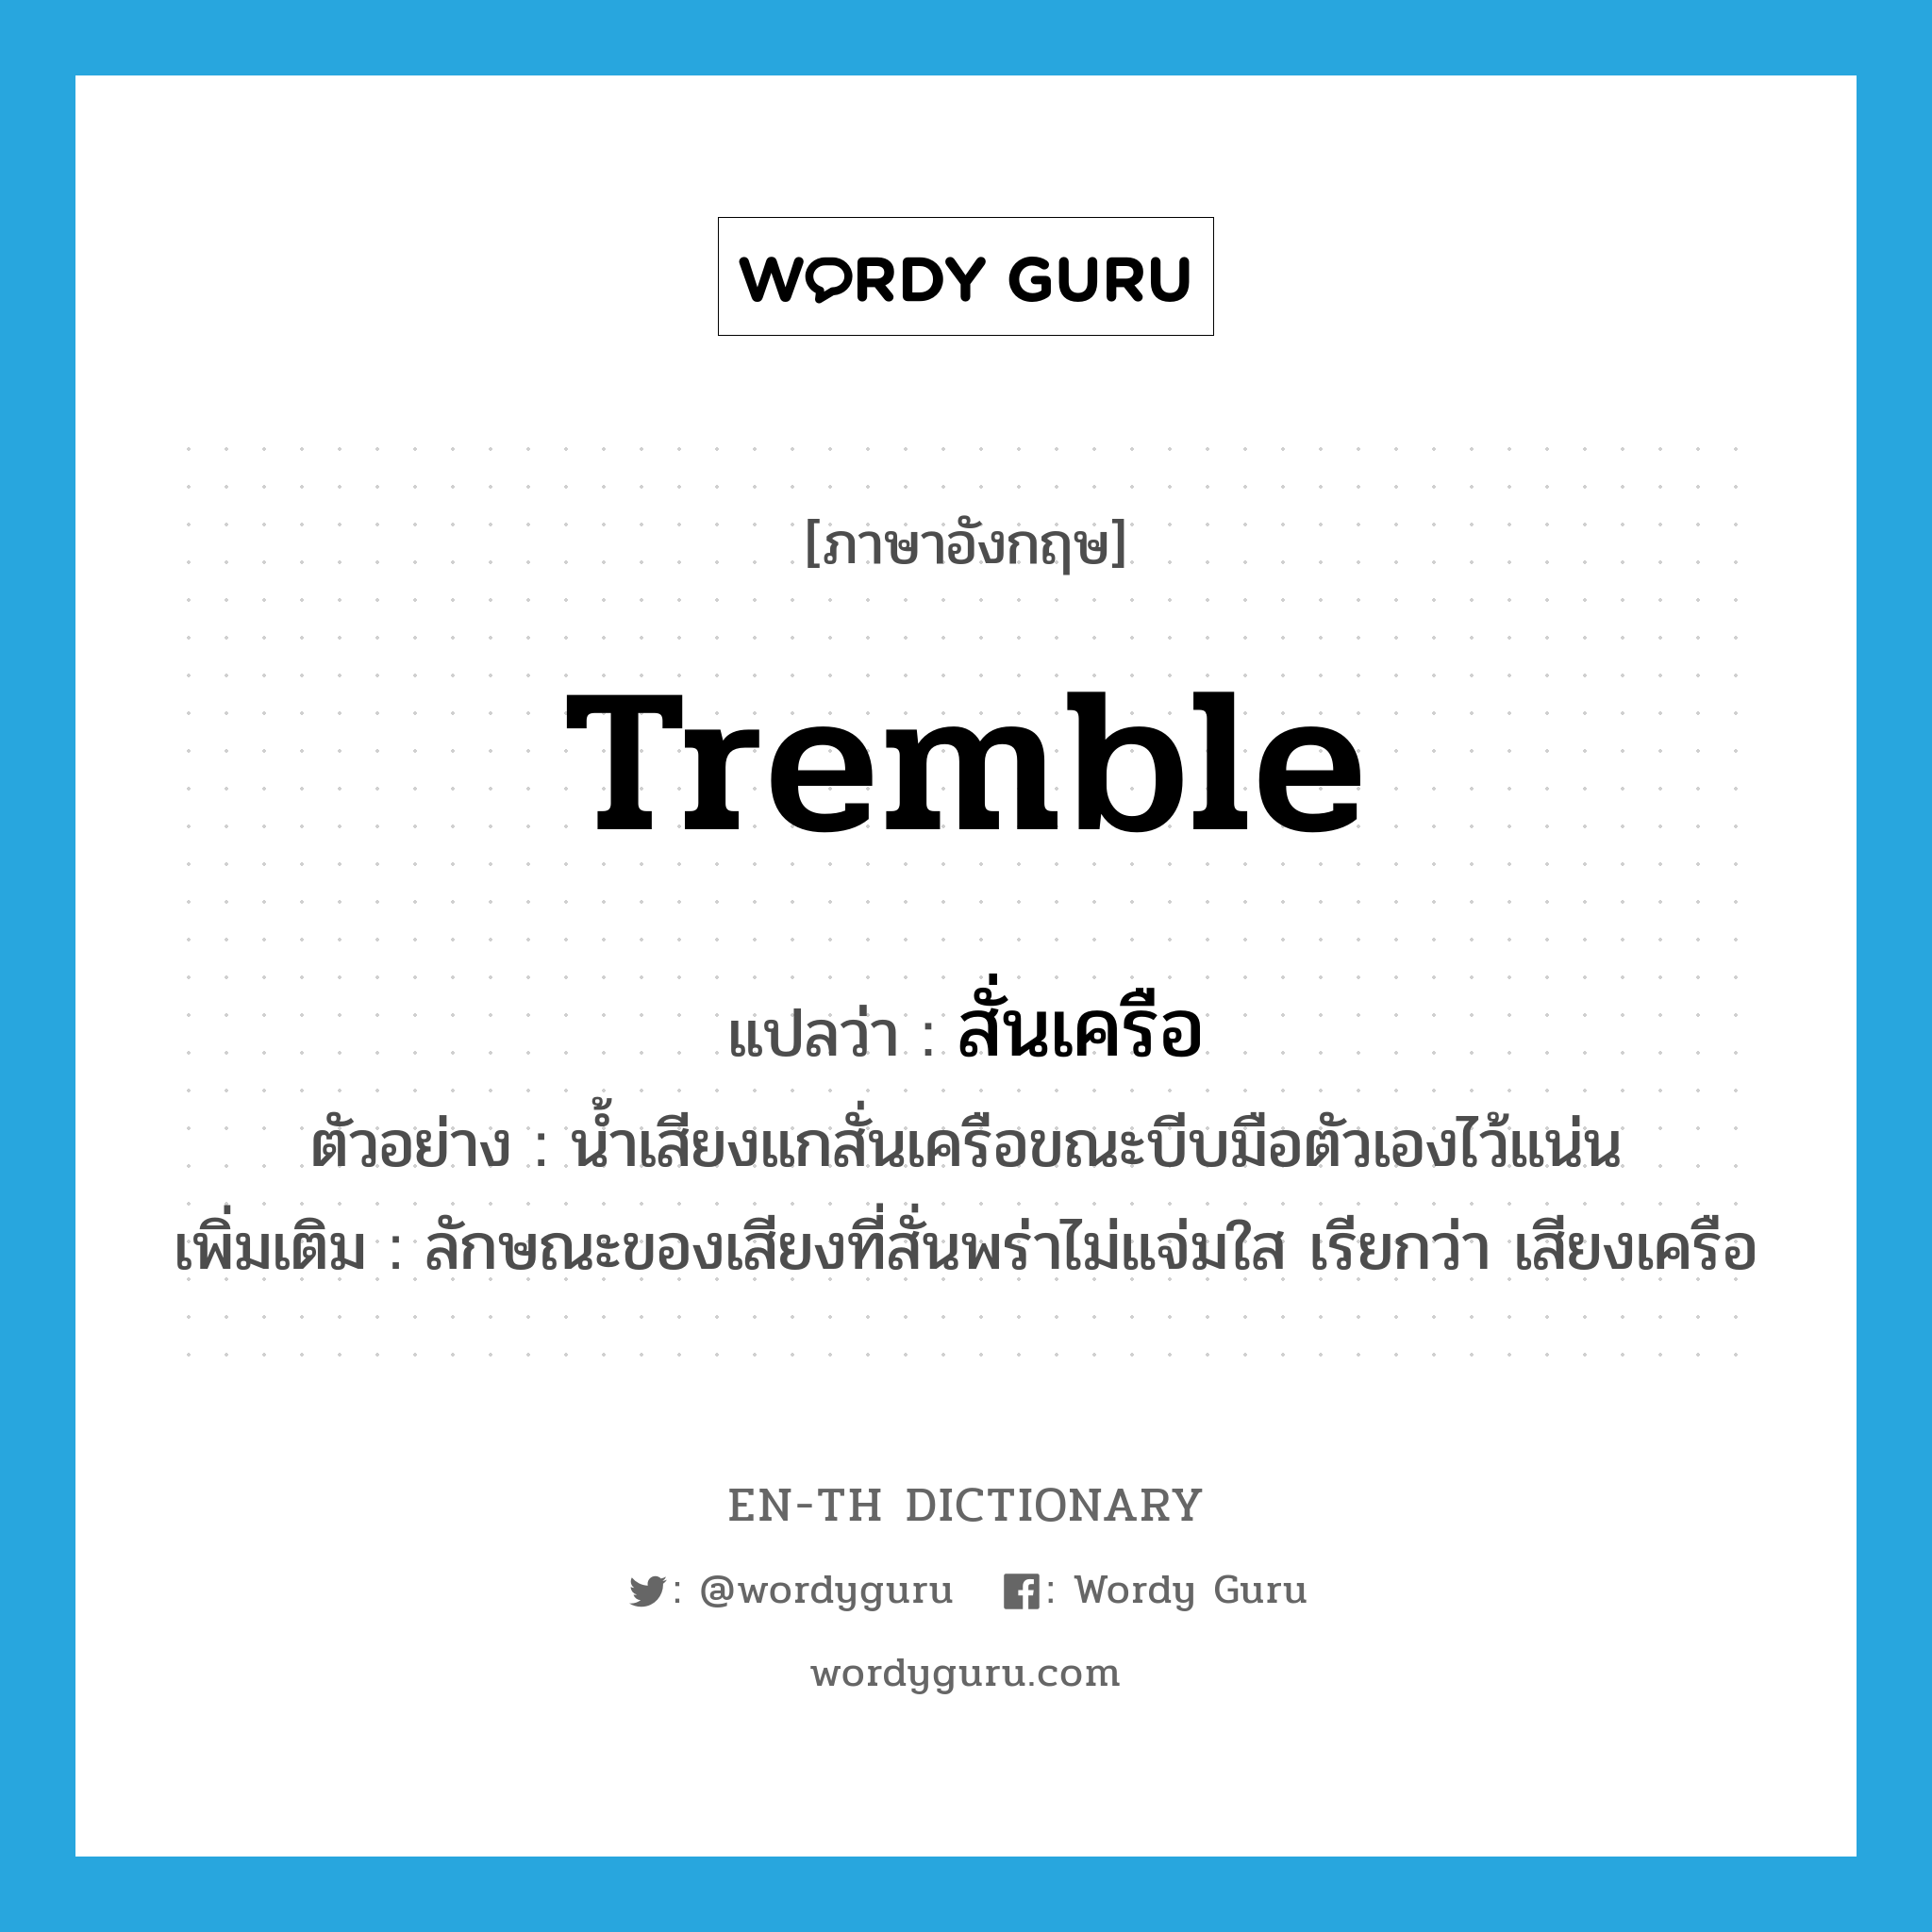 tremble แปลว่า?, คำศัพท์ภาษาอังกฤษ tremble แปลว่า สั่นเครือ ประเภท V ตัวอย่าง น้ำเสียงแกสั่นเครือขณะบีบมือตัวเองไว้แน่น เพิ่มเติม ลักษณะของเสียงที่สั่นพร่าไม่แจ่มใส เรียกว่า เสียงเครือ หมวด V